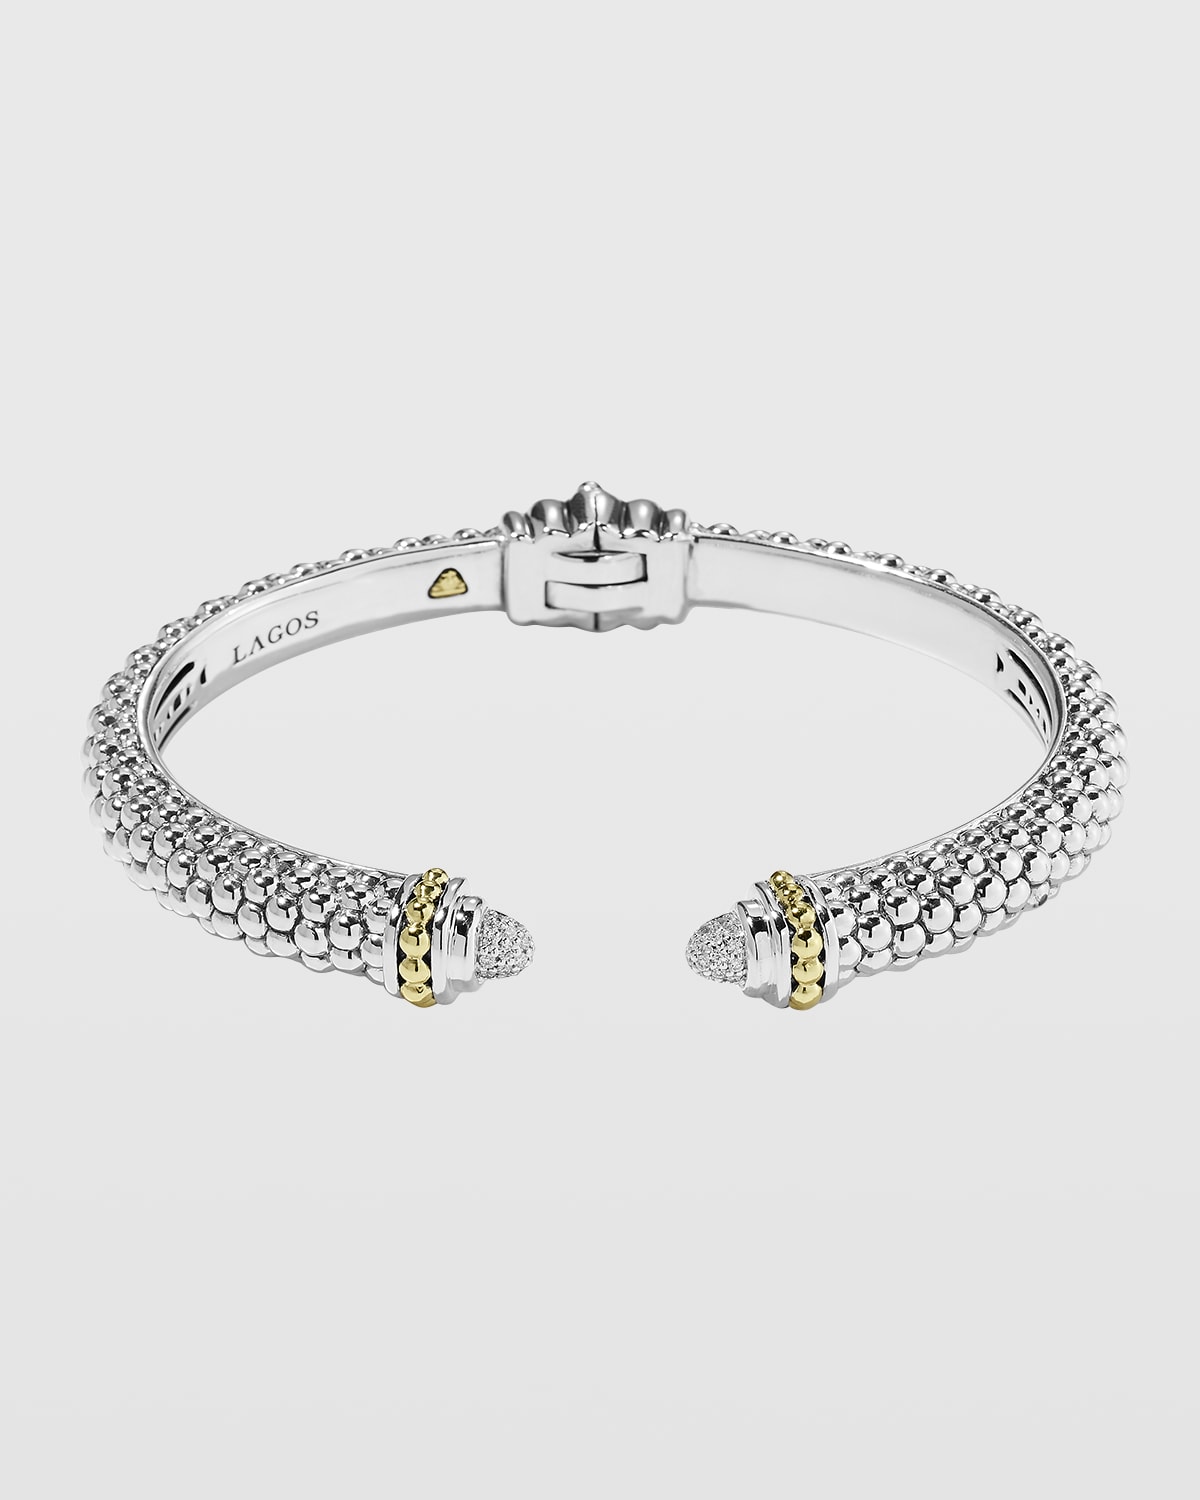 Caviar Small Hinge Bracelet with Diamonds